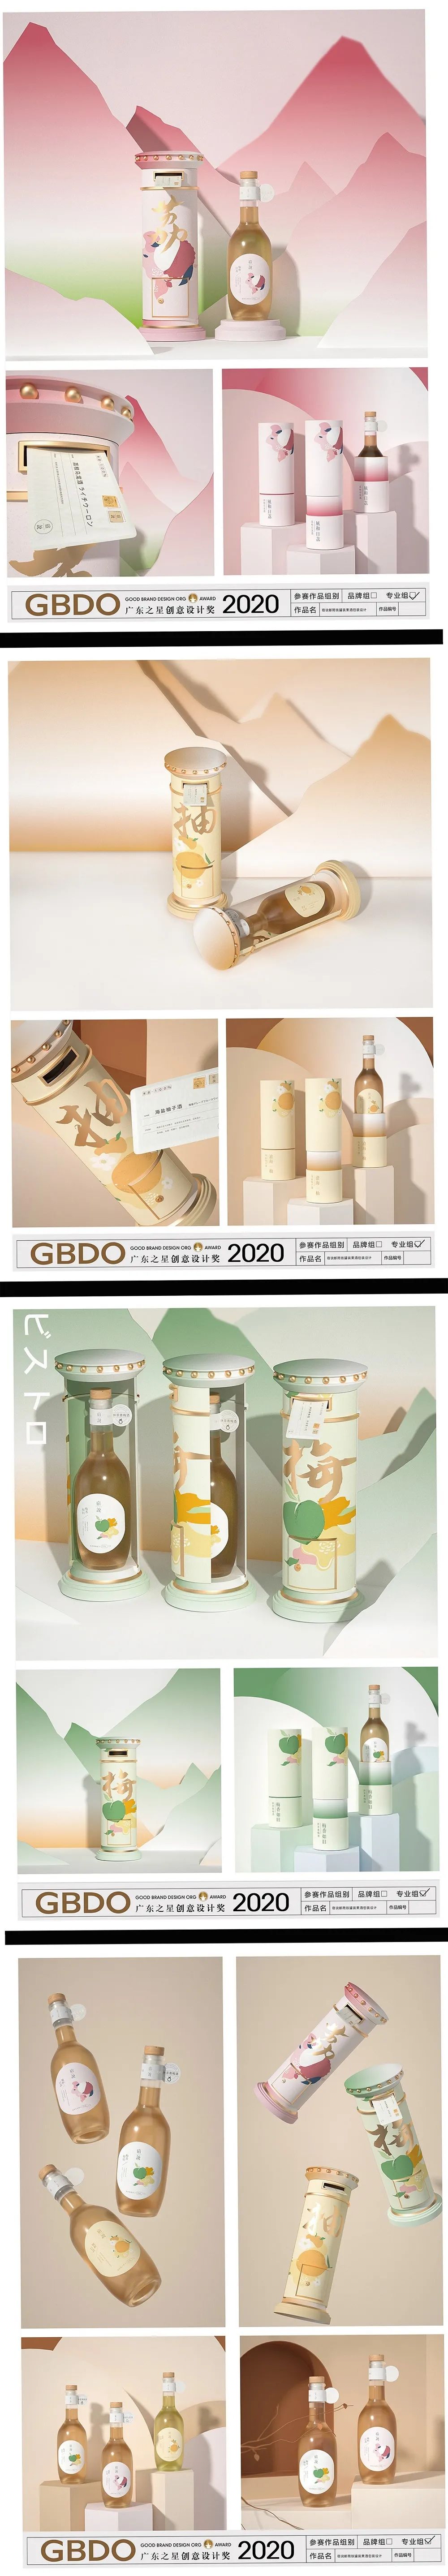 GBDO广东之星创意设计奖39届部分作品欣赏（一）